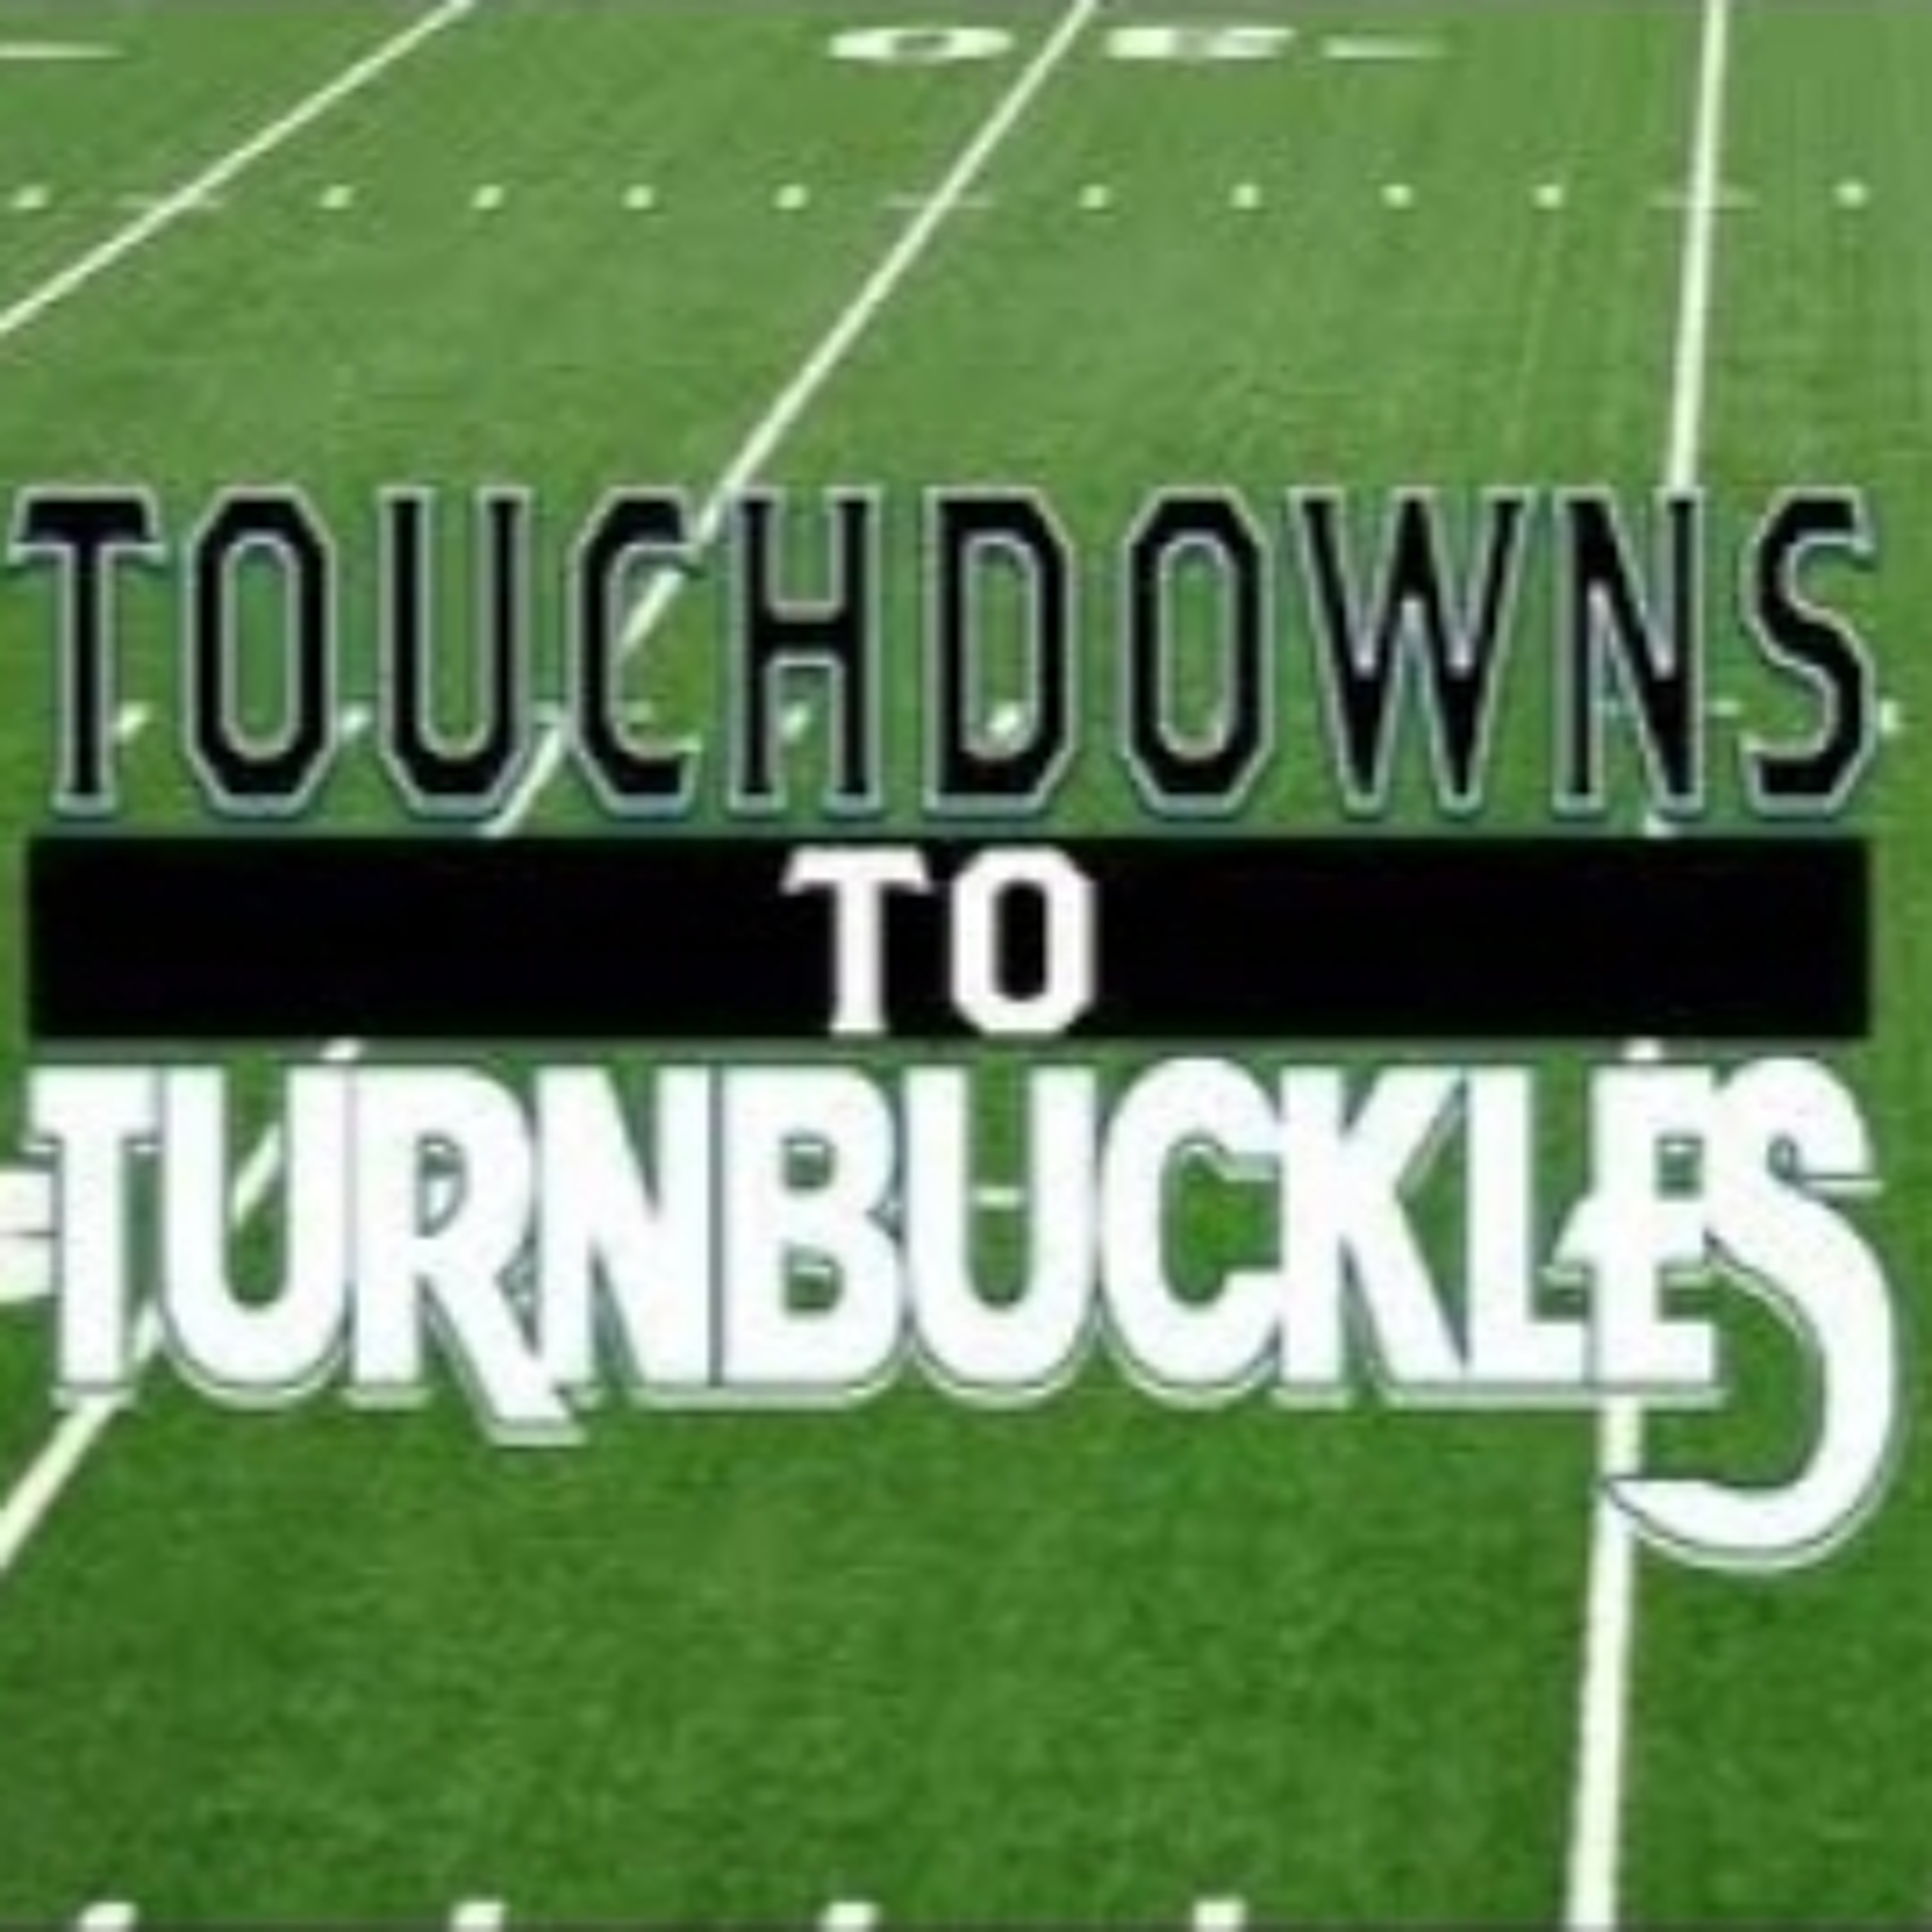 Touchdowns to Turnbuckles Episode 5: The Edmonton Eskimos